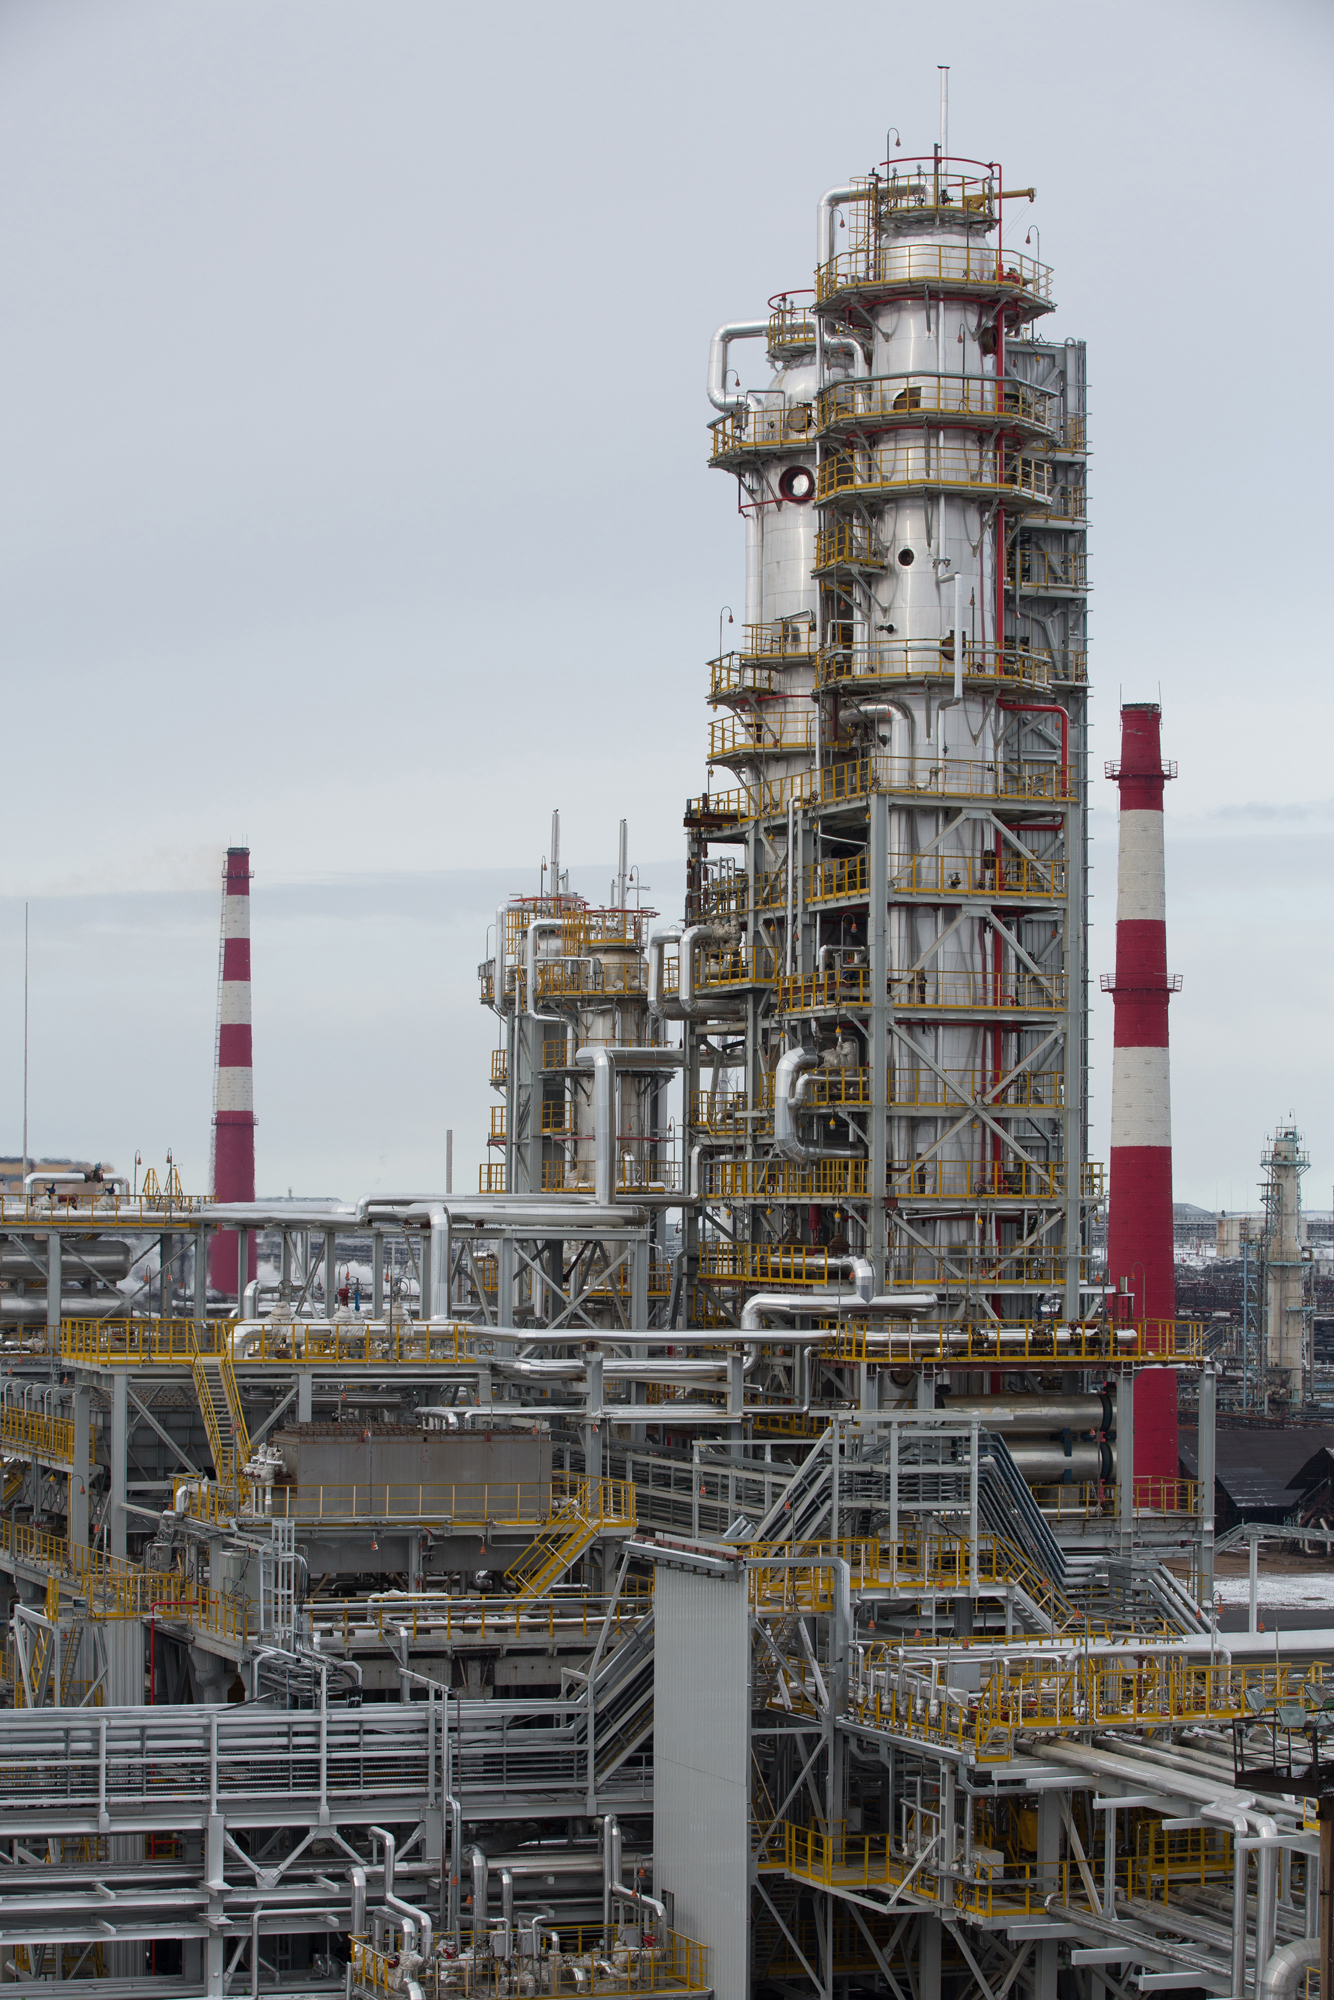 Oil refinery in Ufa, Russia, seen in April 2014.